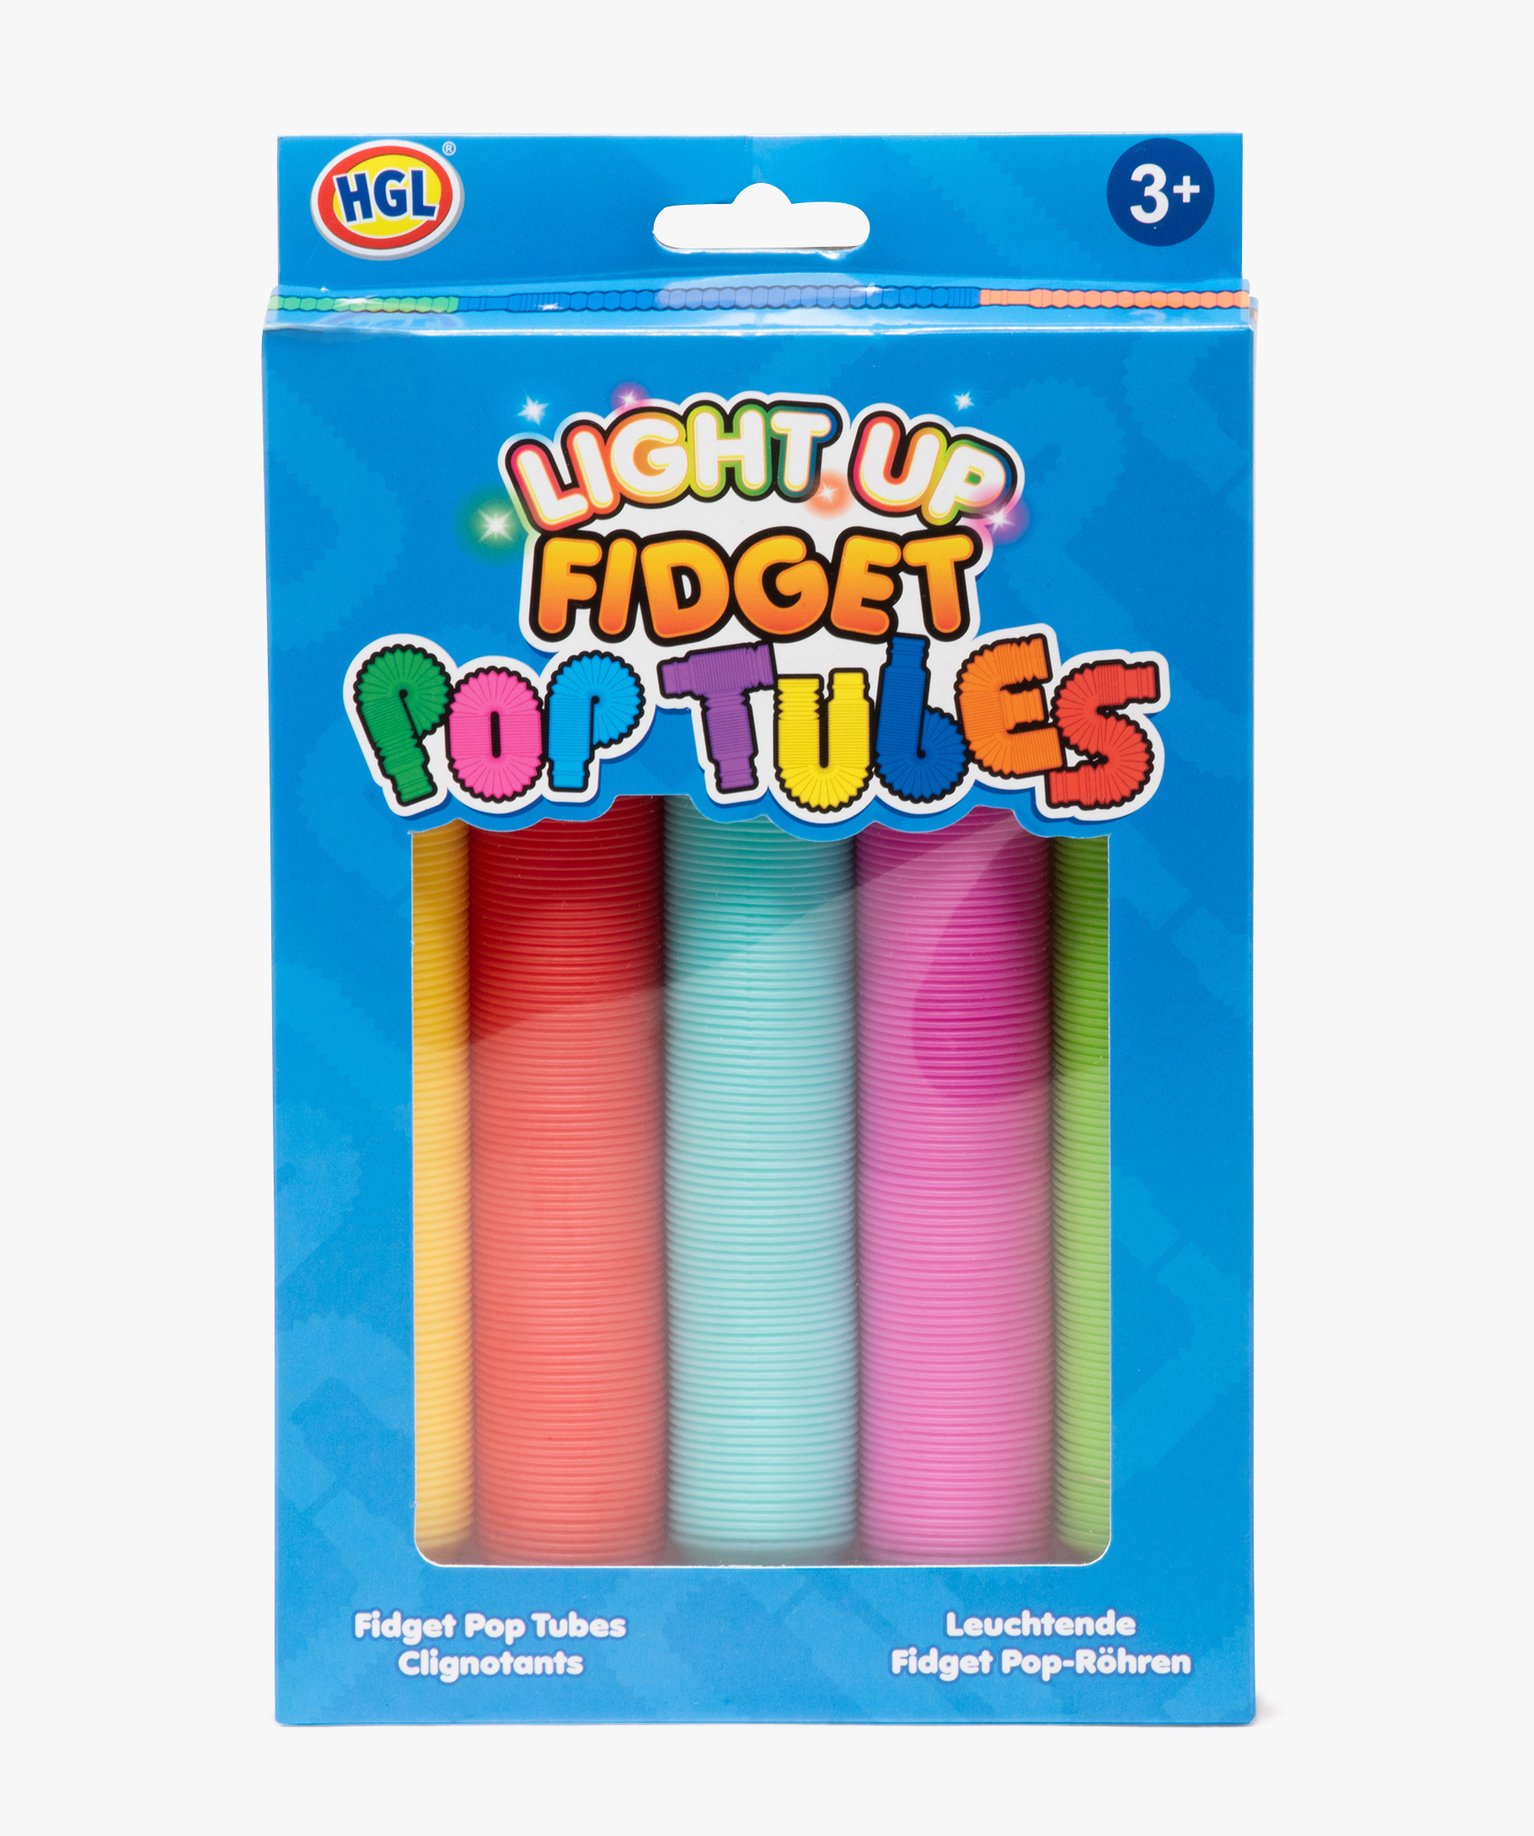 Fidget pop tubes multicolores lumineux - Fidget